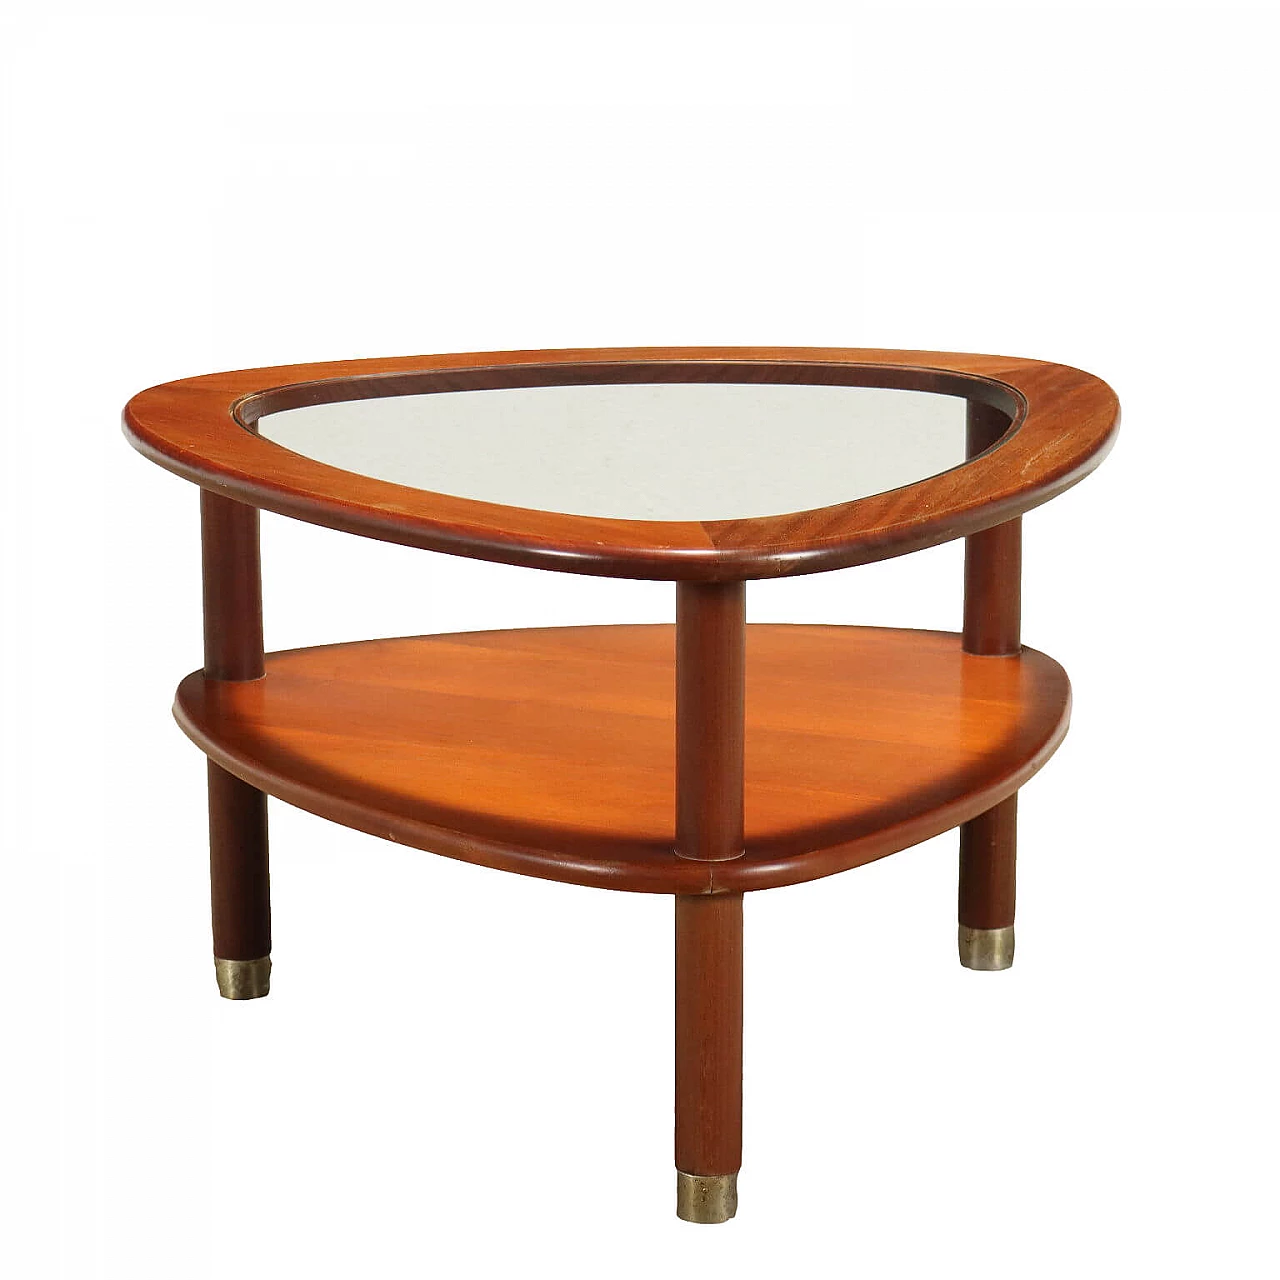 Tavolino in legno impiallacciato teak con terminali in metallo cromato, anni '60 1